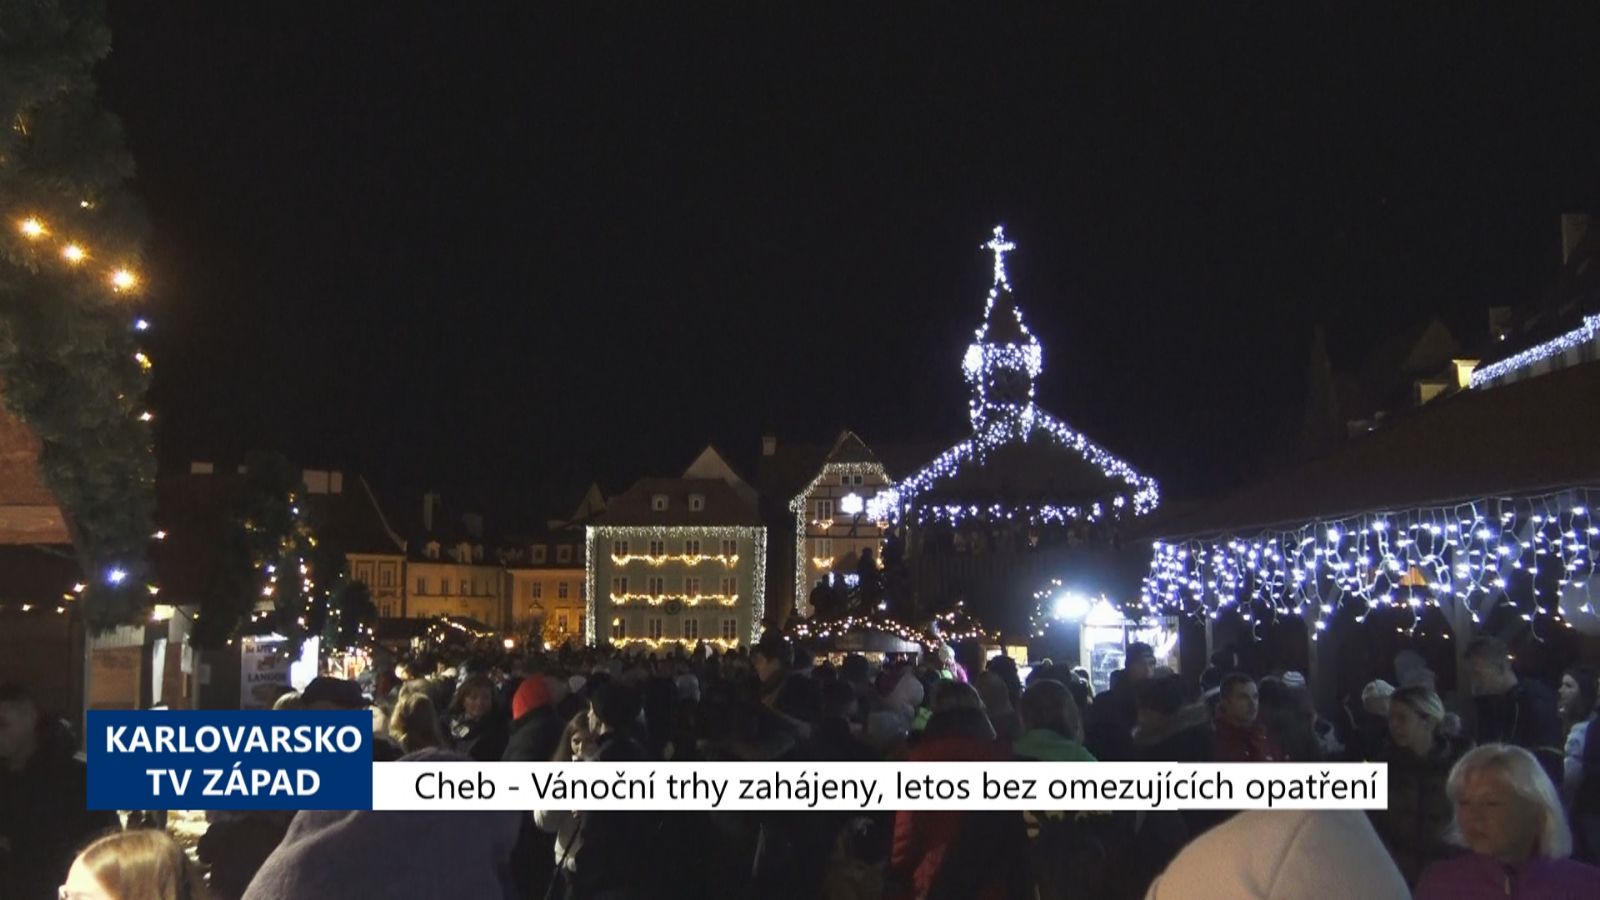 Cheb: Vánoční trhy zahájeny, letos bez omezujících opatření (TV Západ)